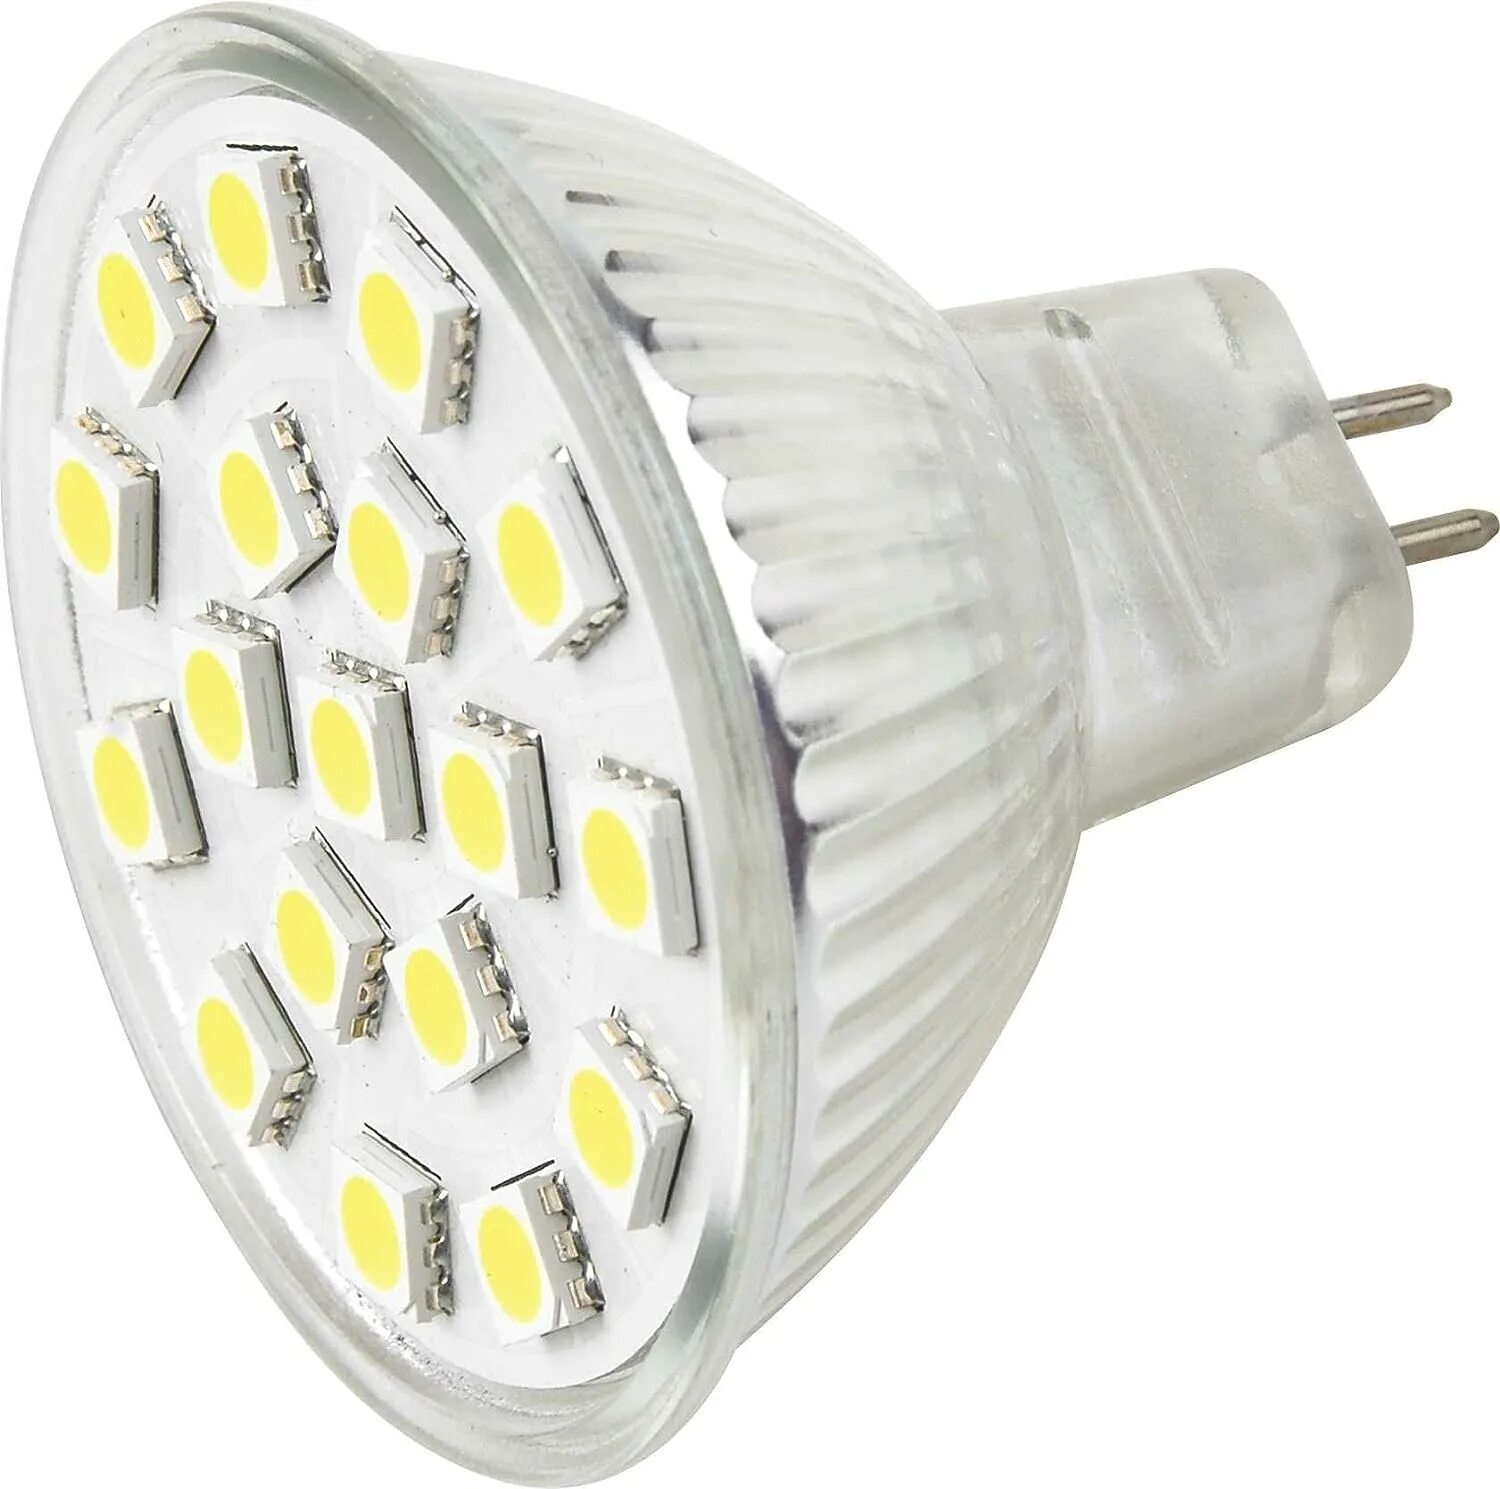 Светодиод лампочка. Светодиодные штырьковые лампы 12 v. Лампа mr16 gu5.3 светодиодная 12 вольт. Светодиодная лампа с цоколем g12. Mr16 лампа светодиодная 12 вольт.